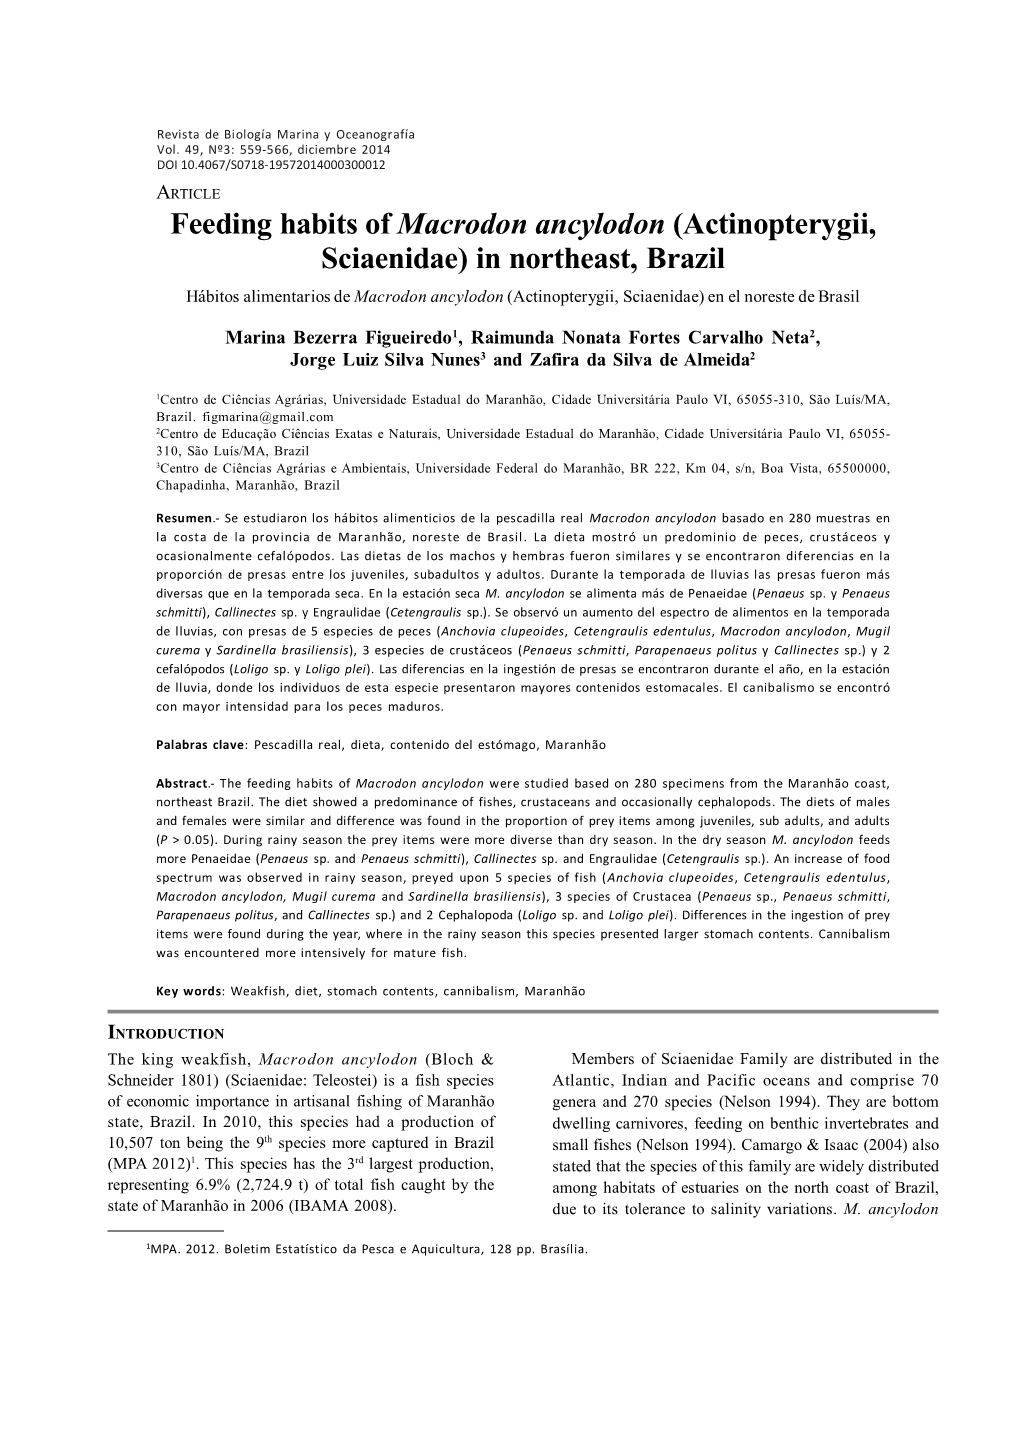 Feeding Habits of Macrodon Ancylodon (Actinopterygii